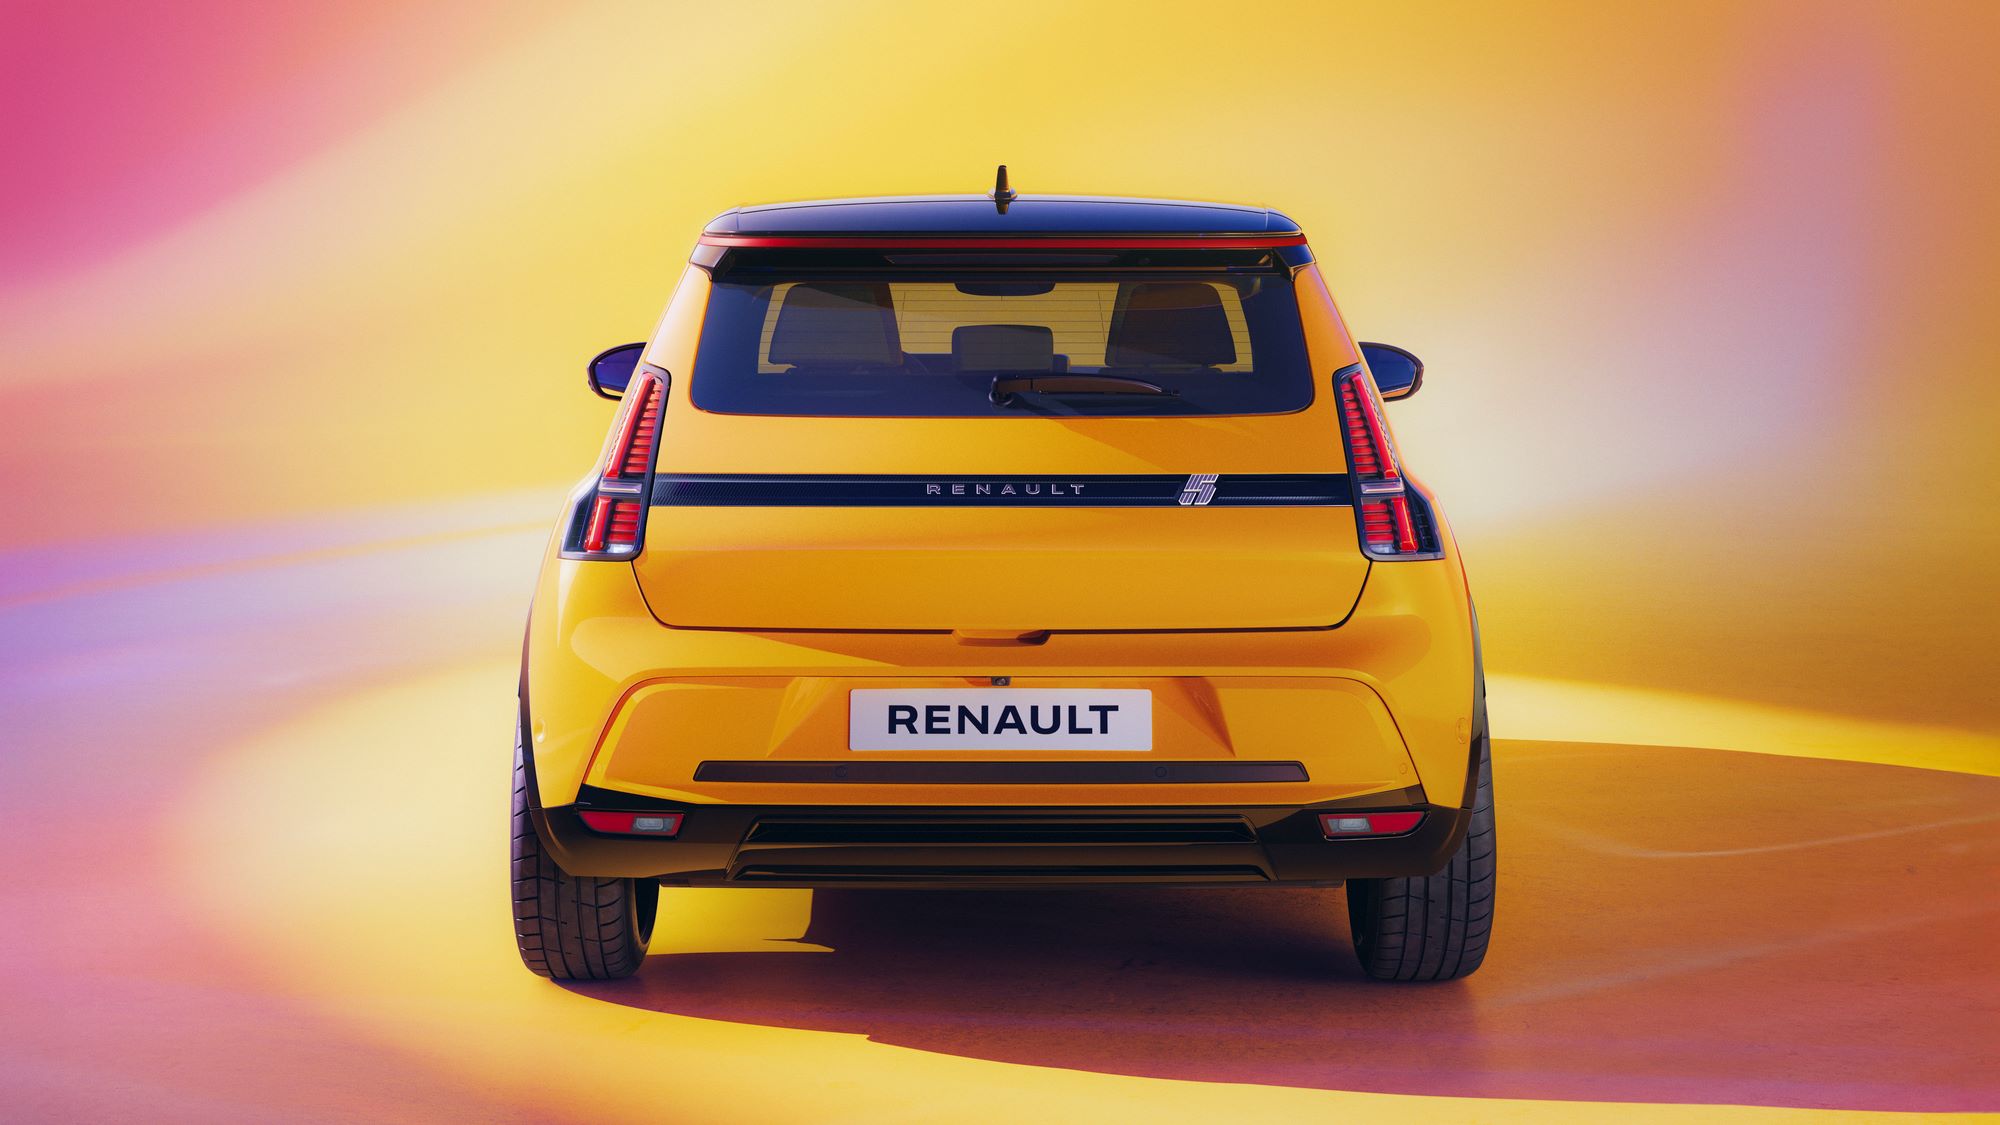 Renault 5 E-Tech NZ